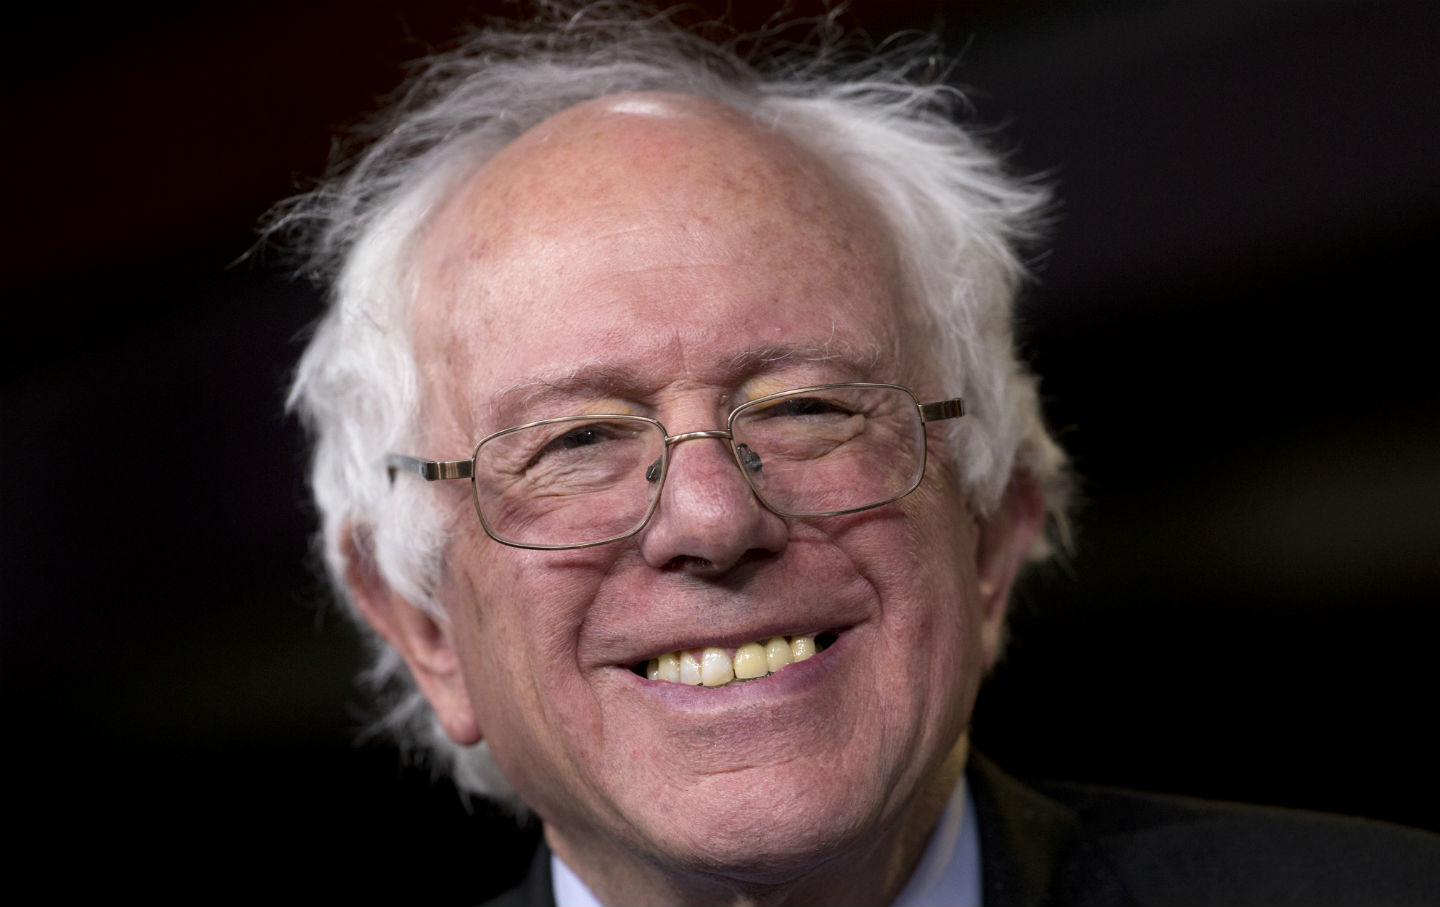 Can Bernie Sanders Break Through the Status Quo?